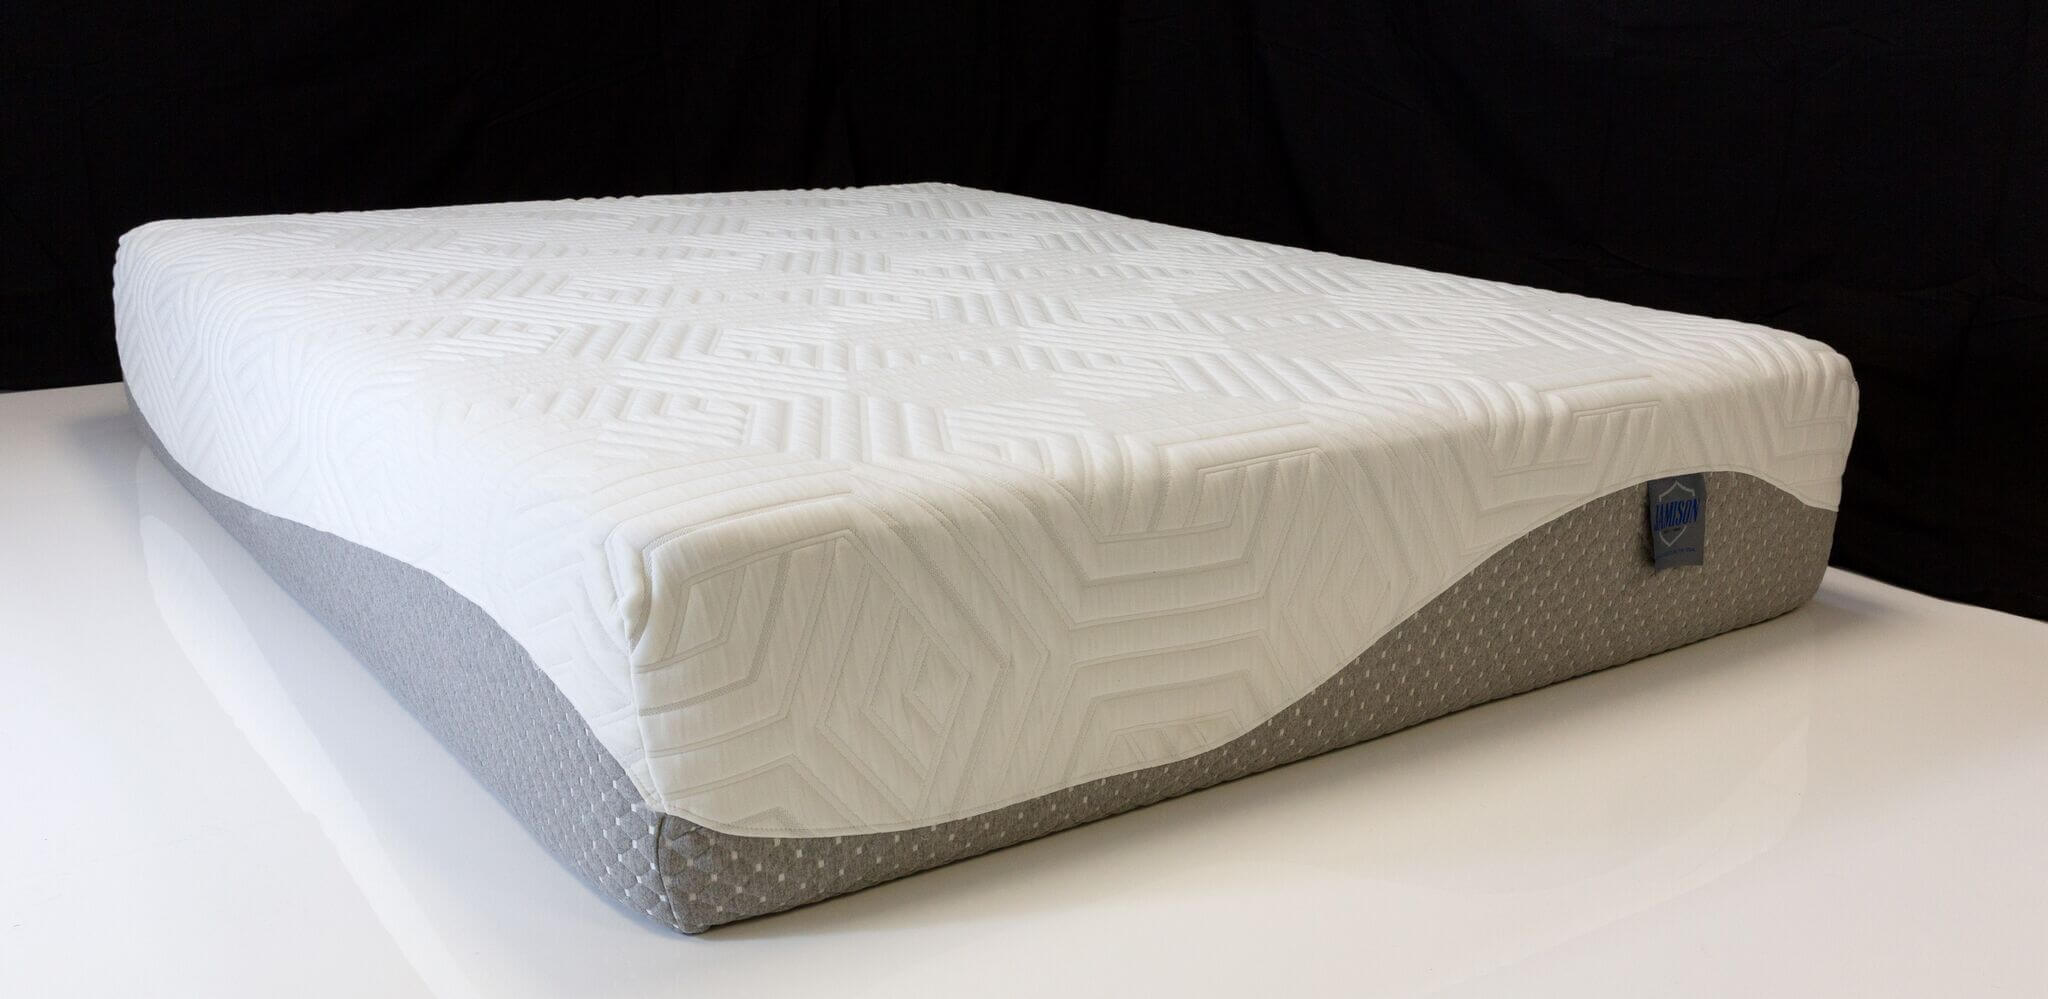 jamison tlc latex mattress